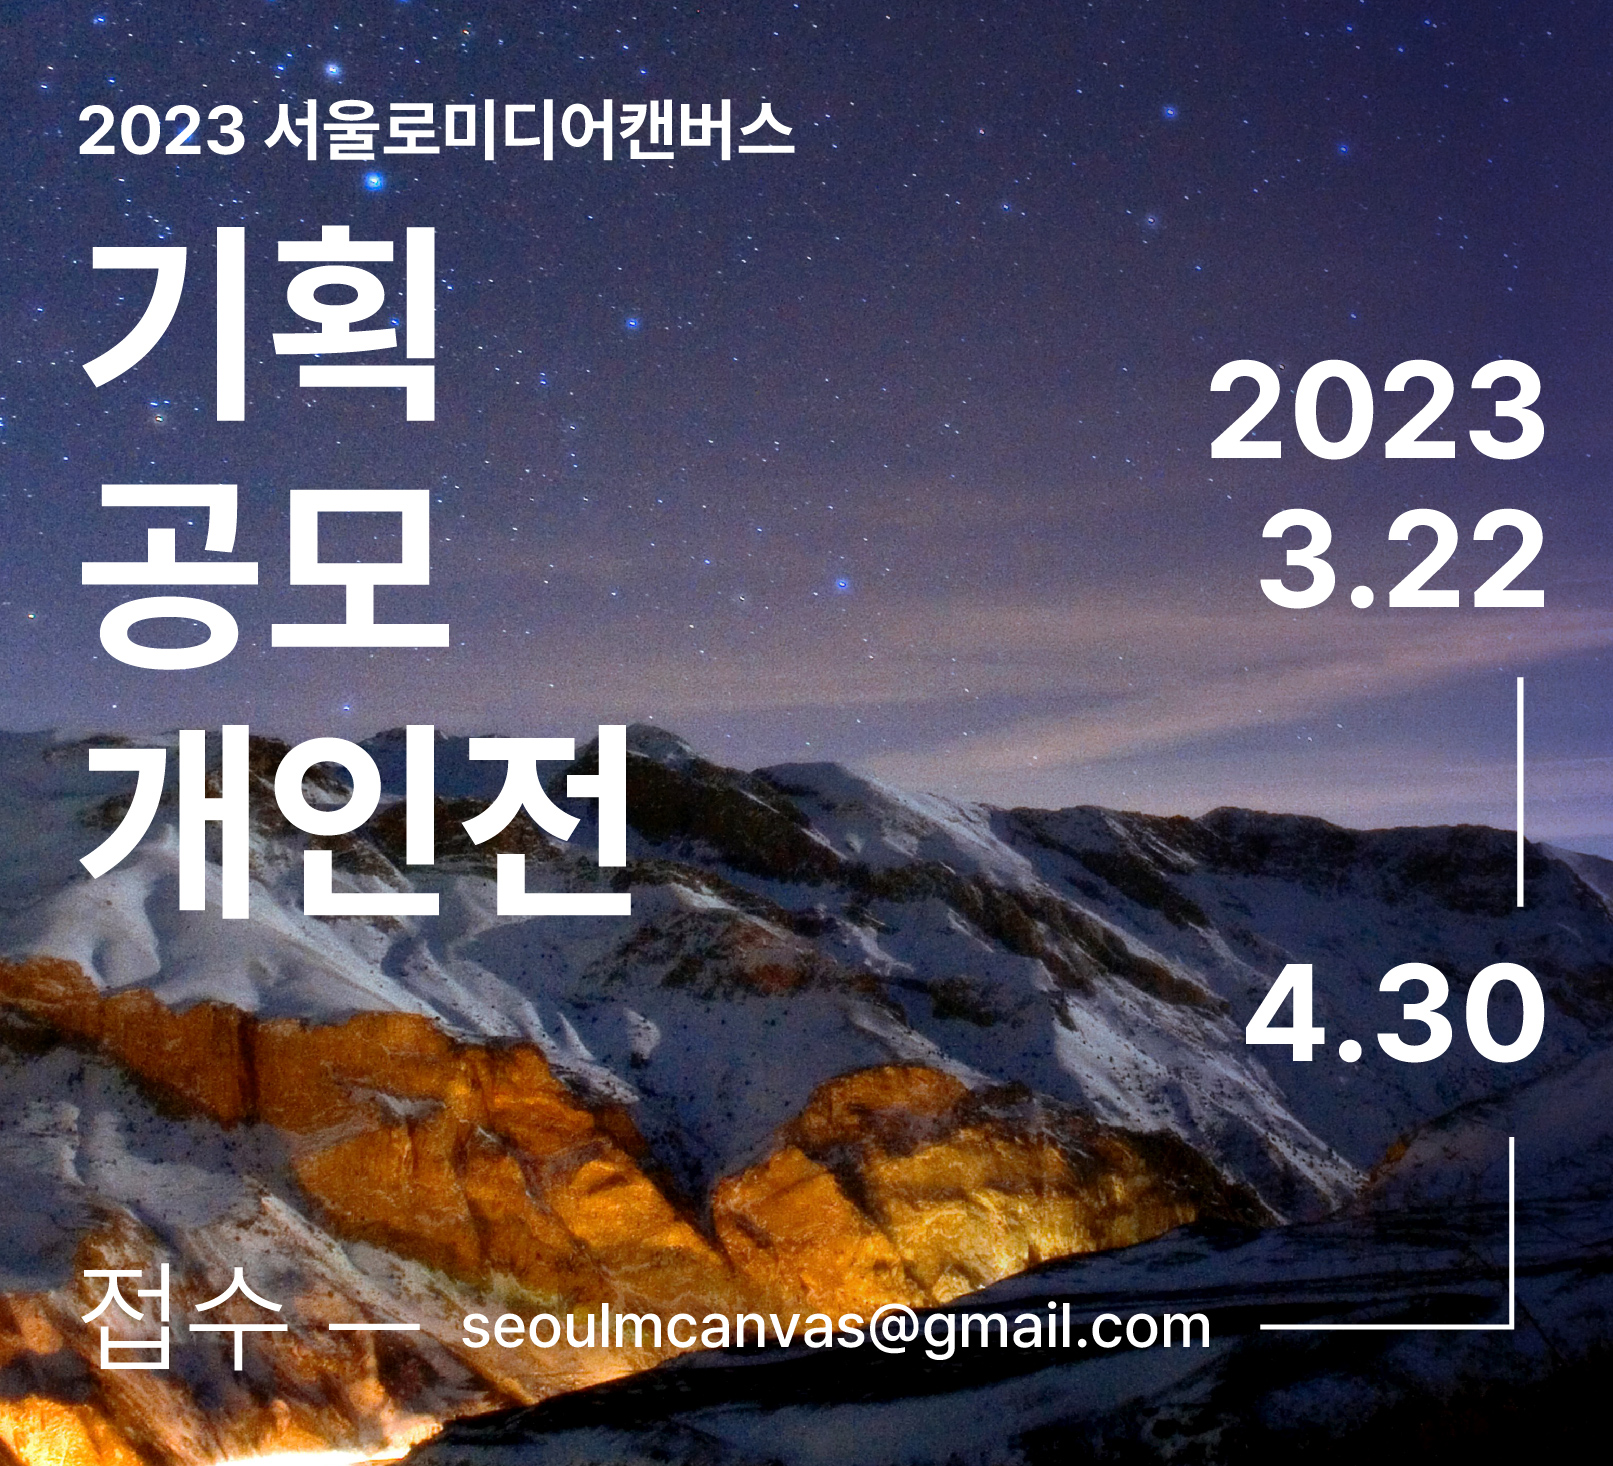 2023 서울로미디어캔버스 기획공모개인전 공모 